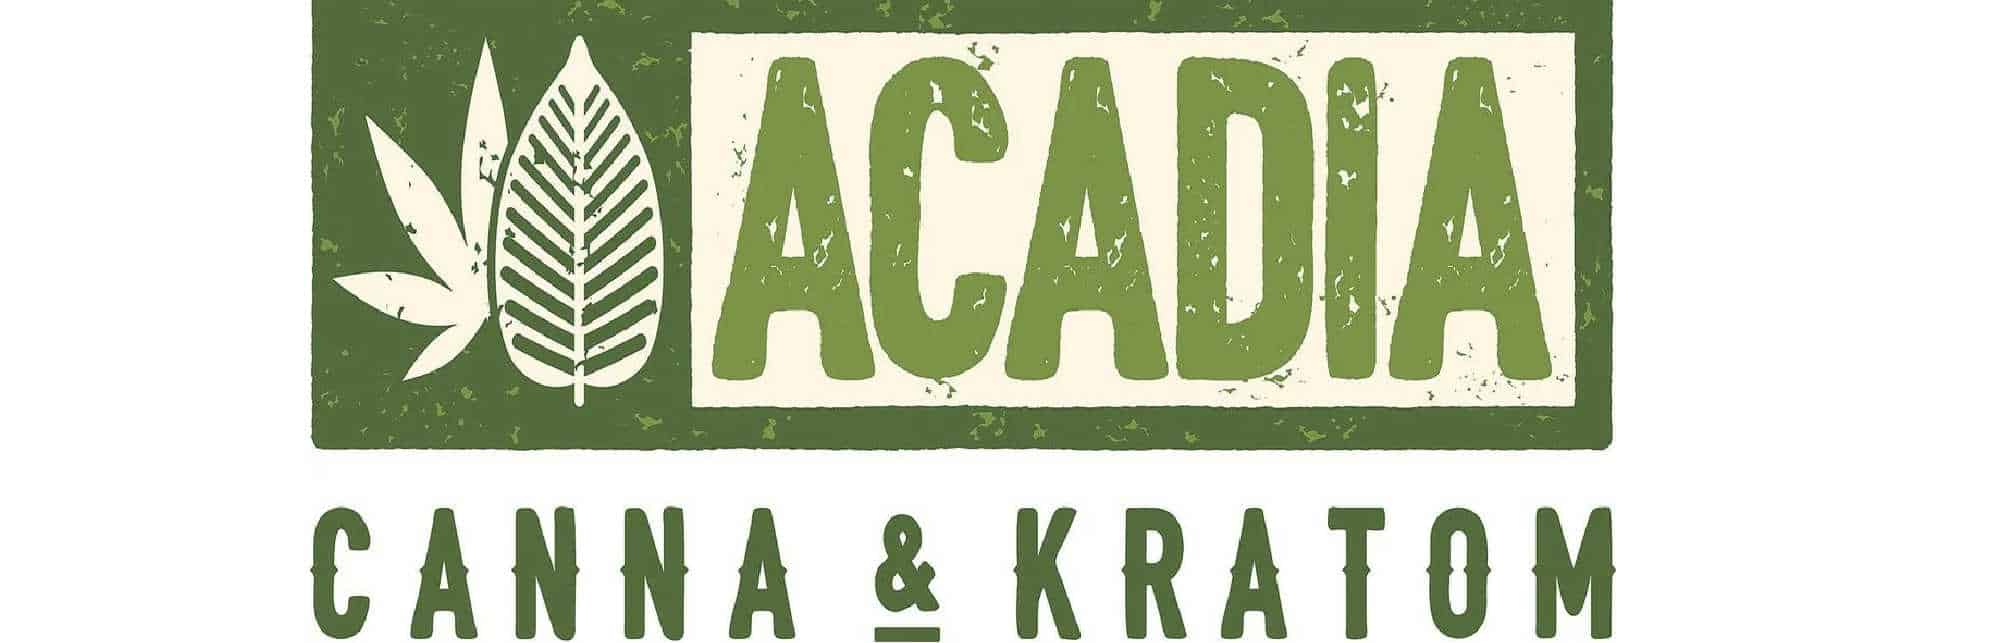 image of acadia canna & kratom logo